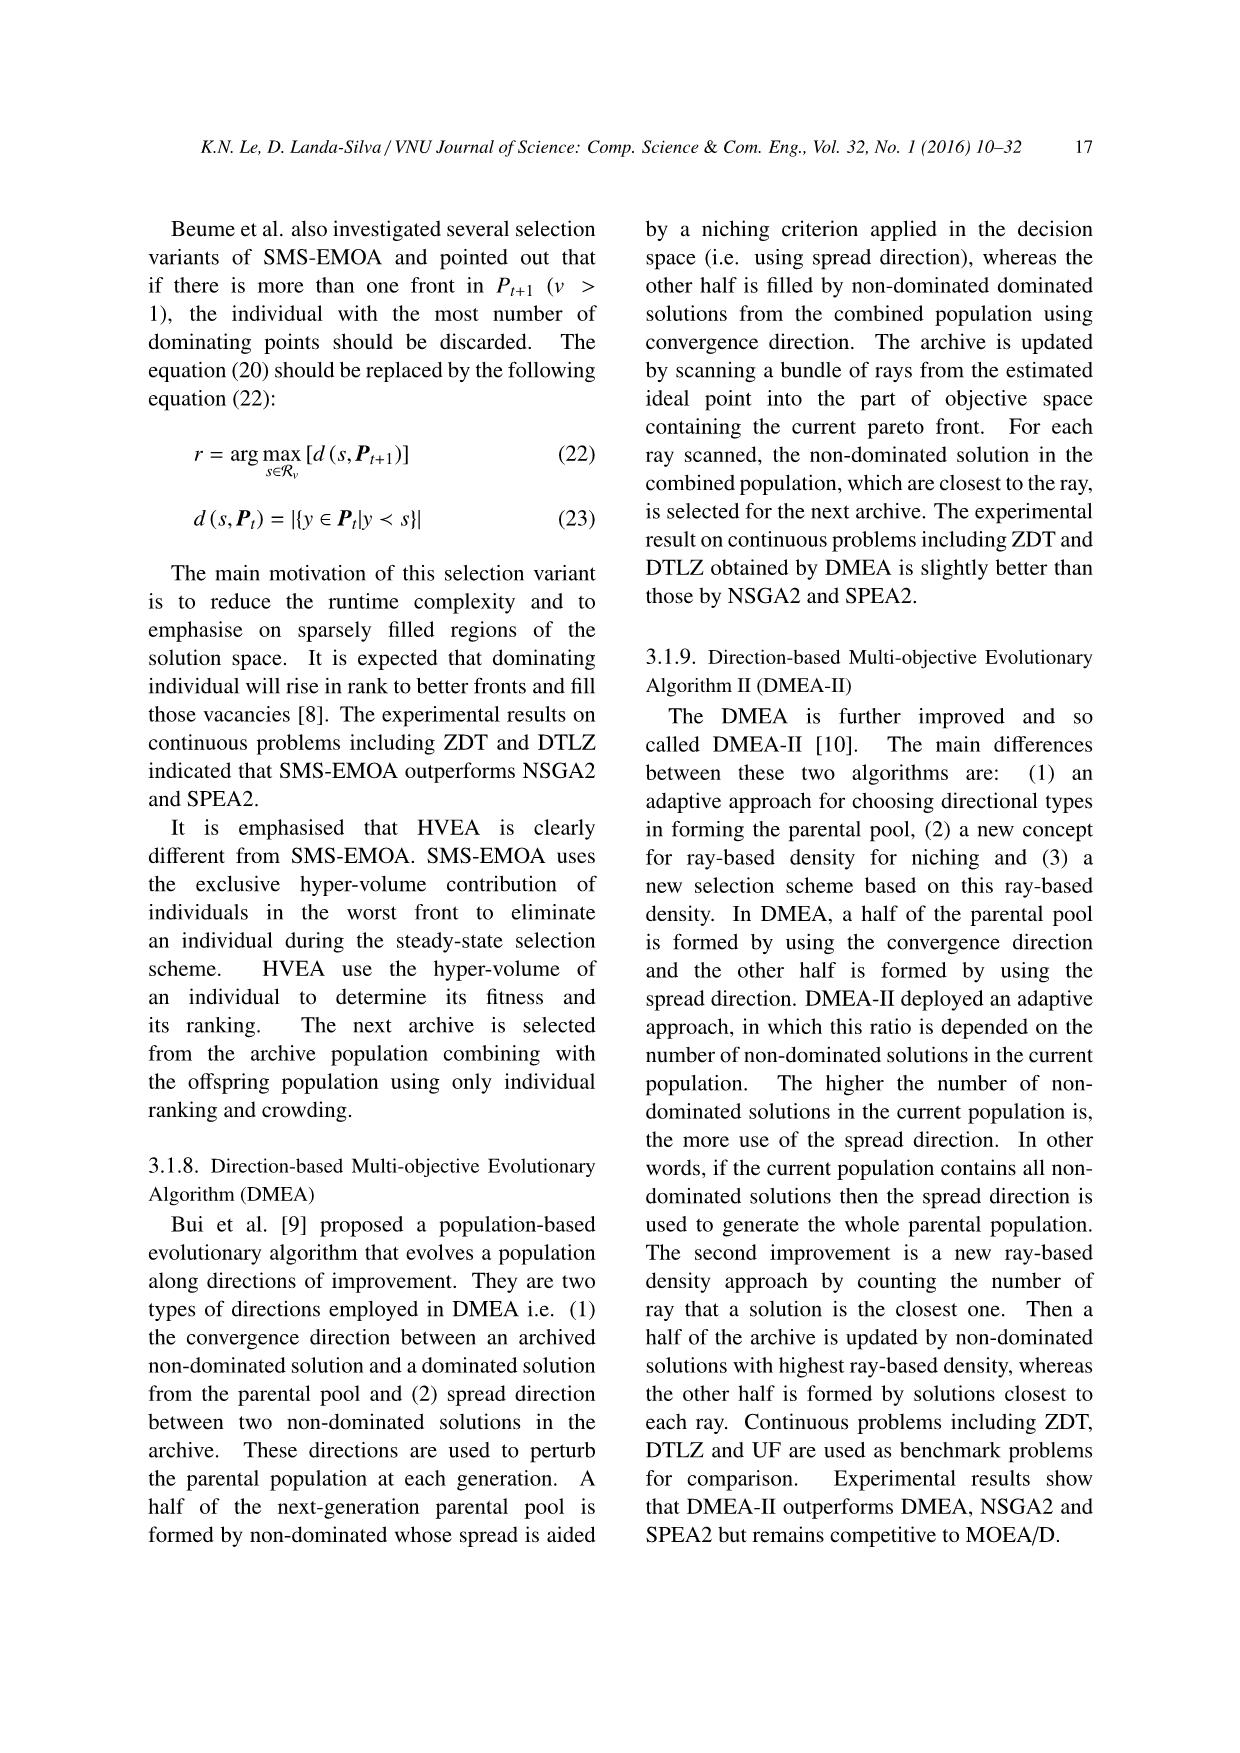 Hyper - Volume evolutionary algorithm trang 8